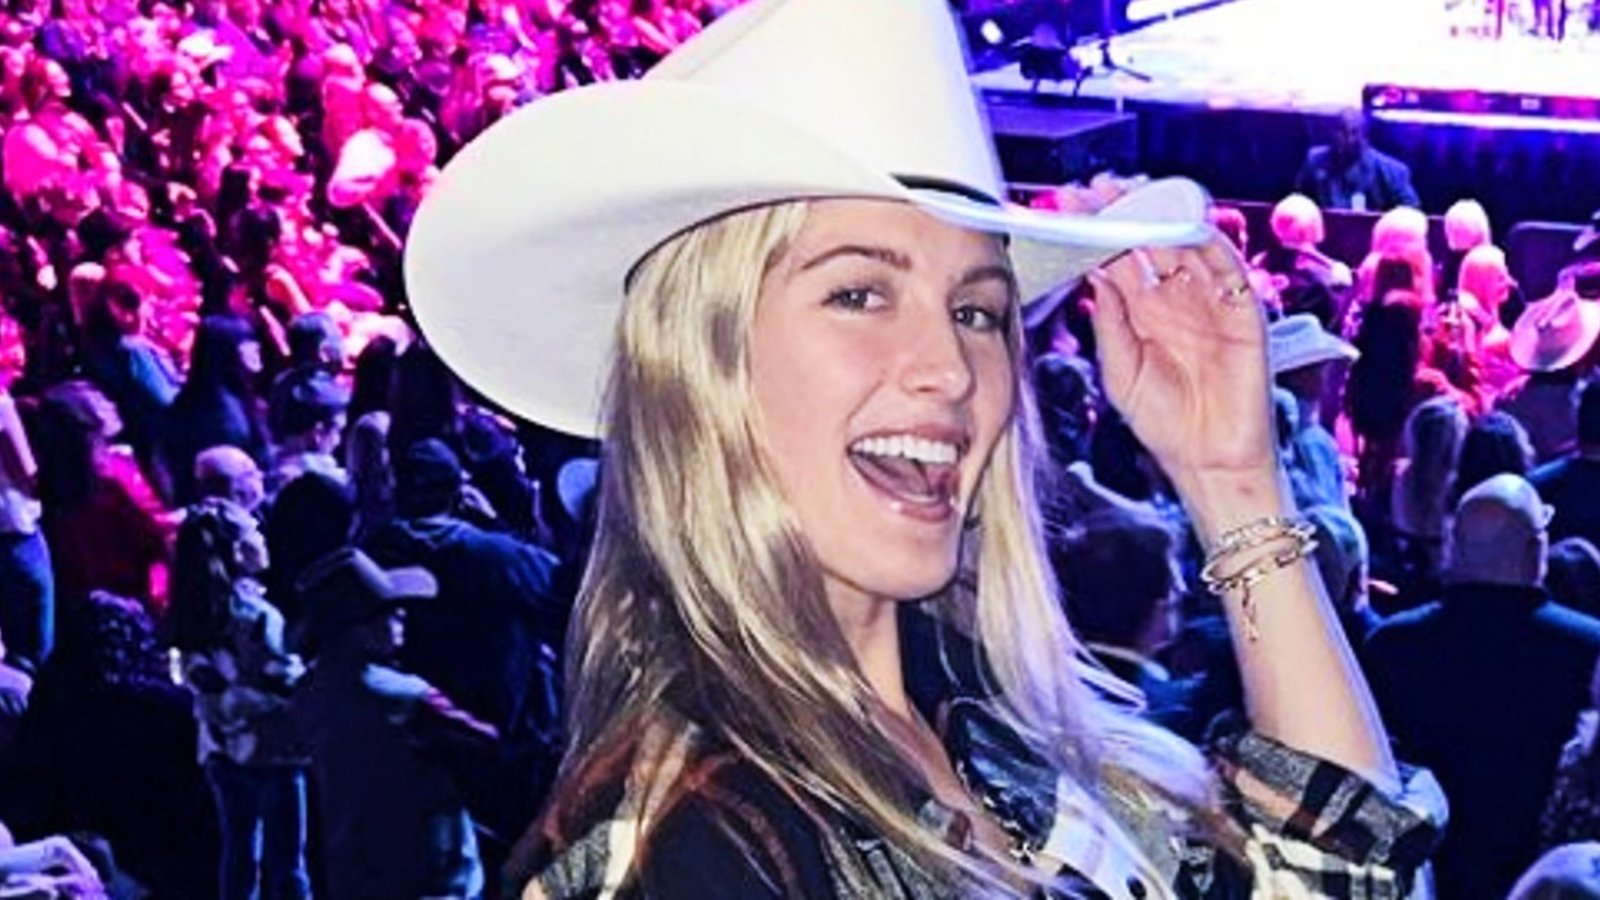 Le look de cowgirl d'Eugenie Bouchard à Las Vegas fait beaucoup jaser les internautes